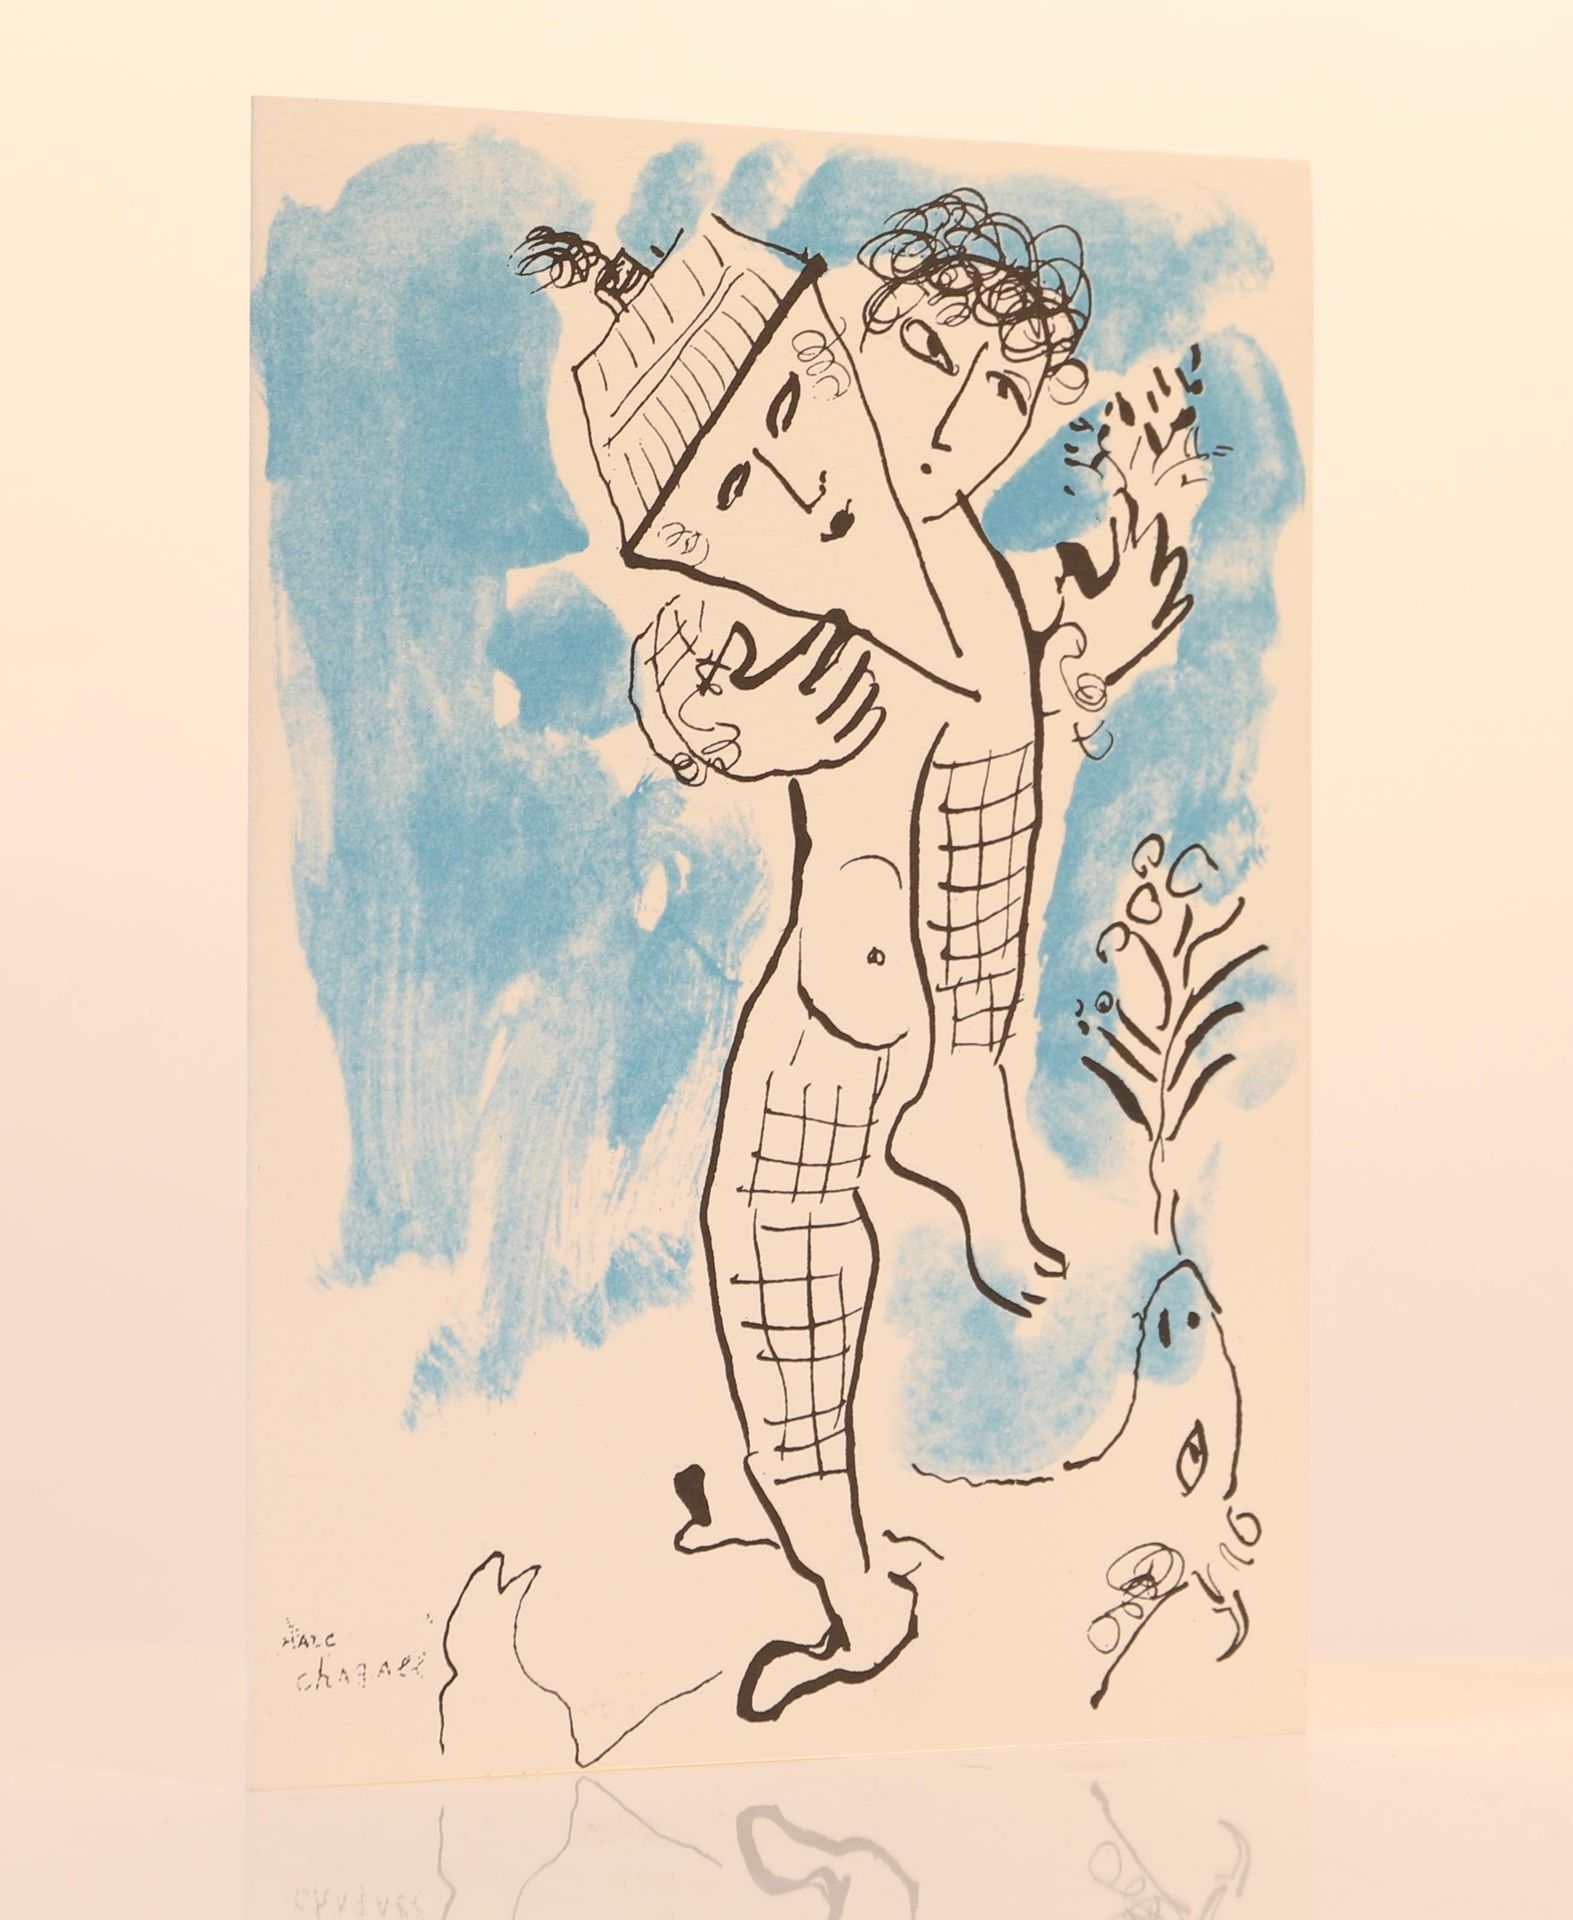 Null Tarjeta de invitación l'Acrobate de Chagall

Dimensiones: H; 21; W: 15 cm